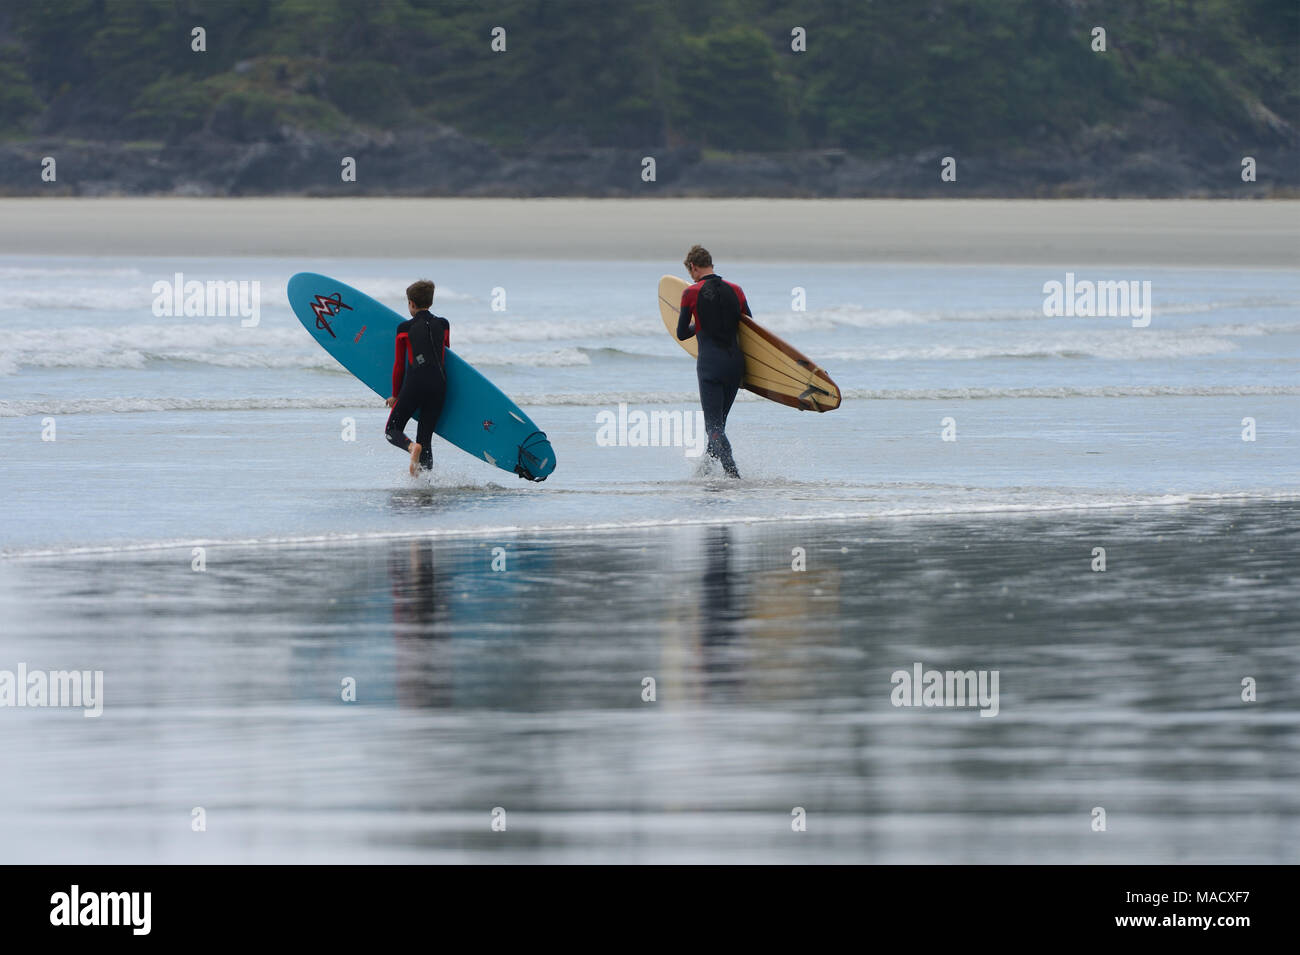 Dudes Surfer la marche sur la plage avec leur planche de surf sous le bras. Long Beach, Colombie-Britannique, Canada. Banque D'Images